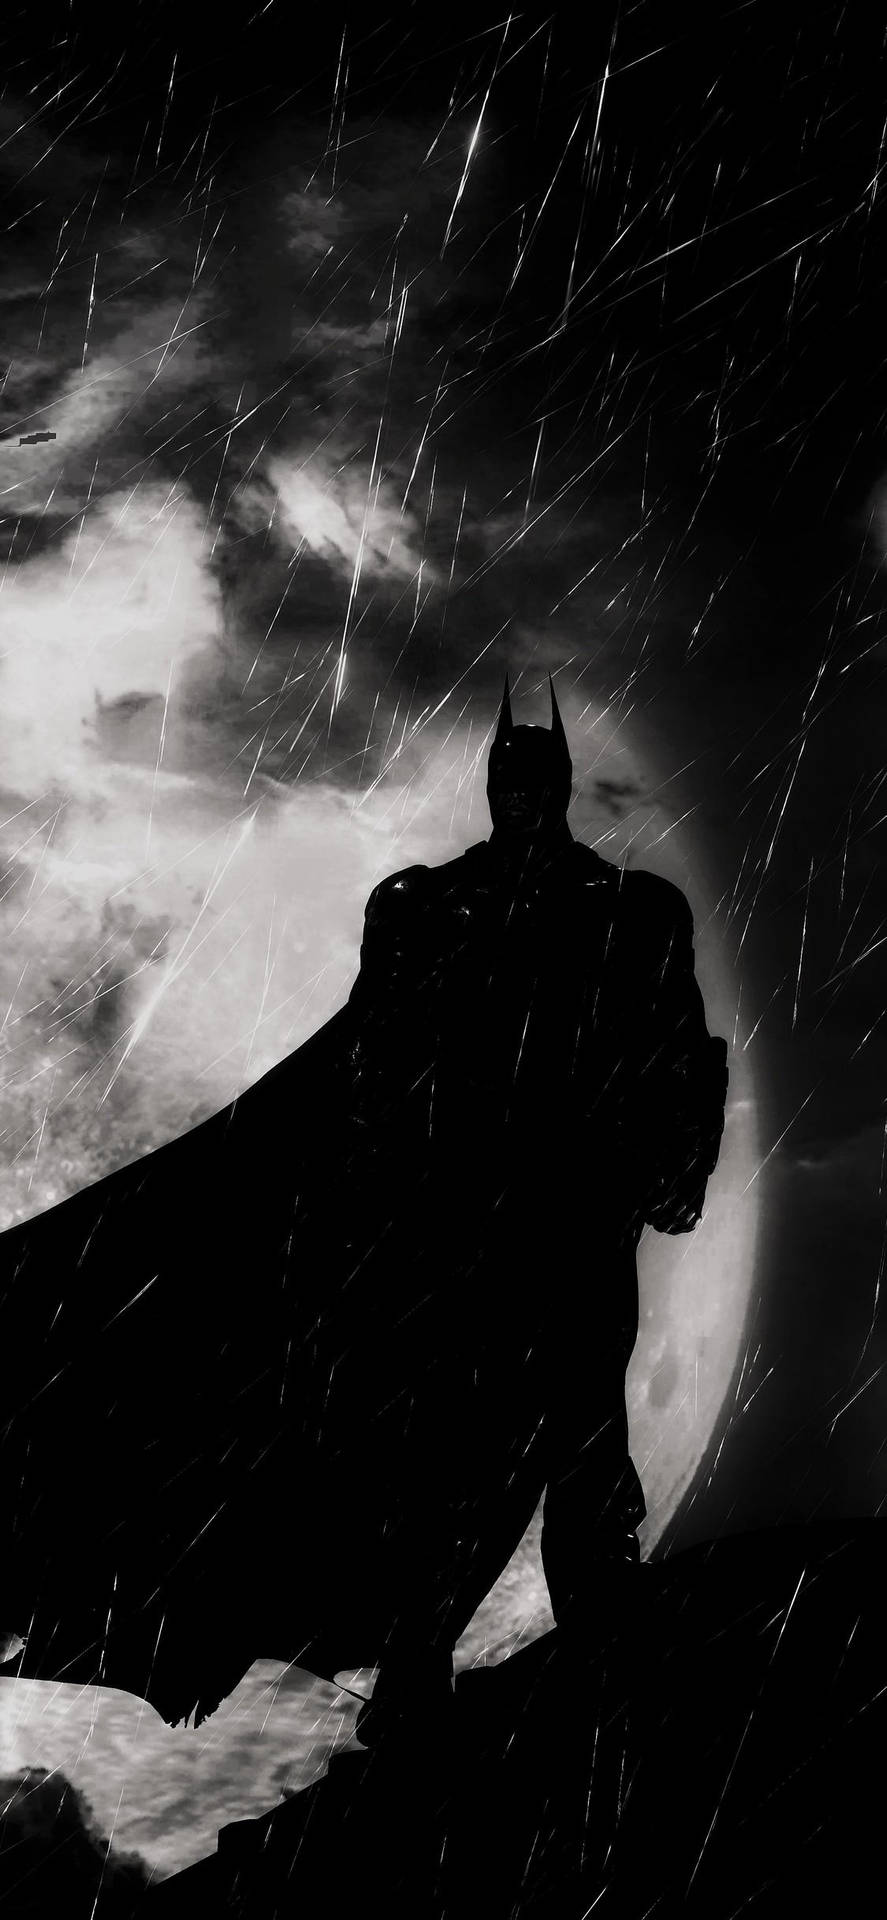 Schwarzesund Weißes Umrissbild Von Batman Arkham Knight Für Das Iphone. Wallpaper